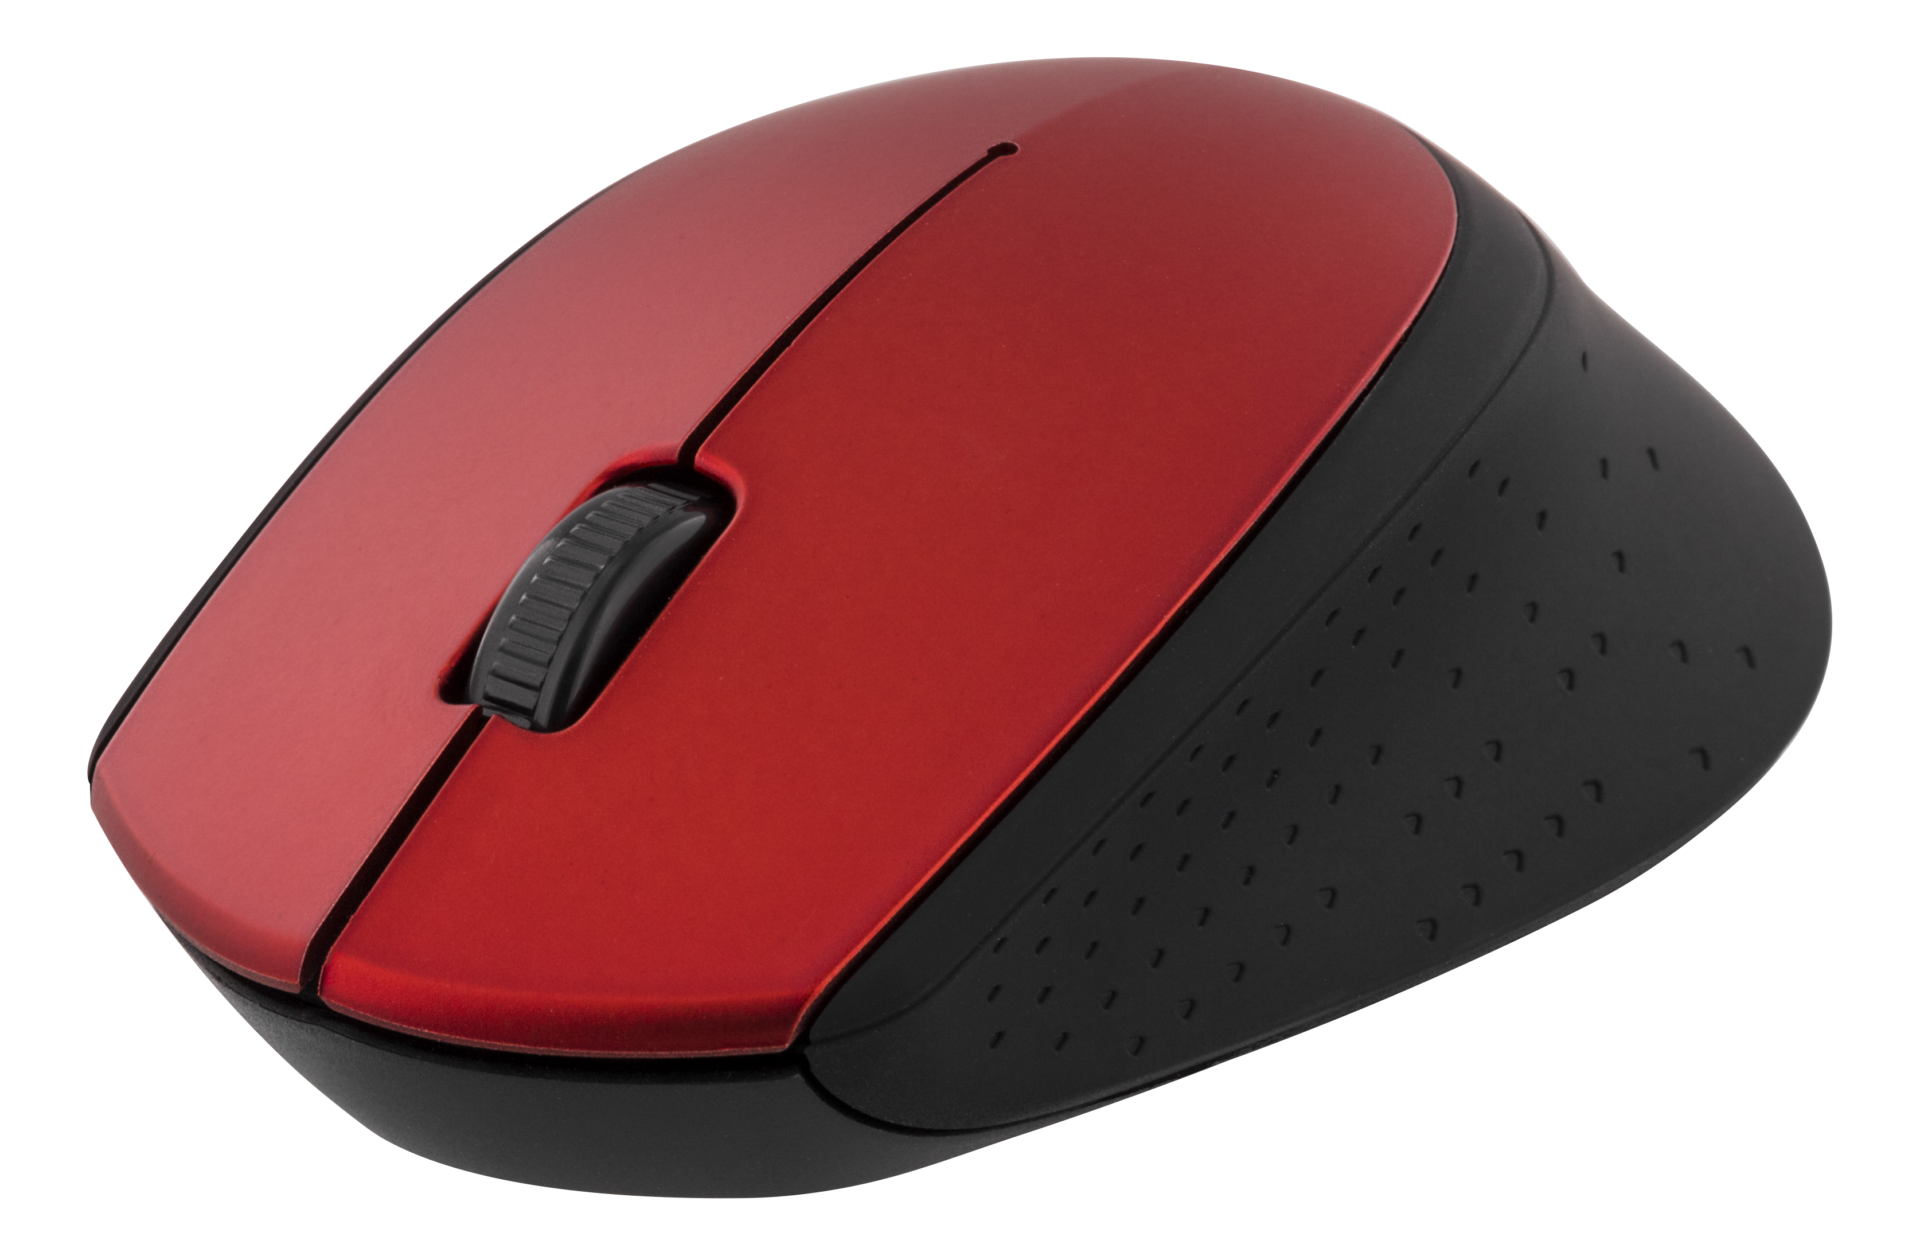 MS-1020b мышь. Беспроводная мышь EUROTECH 1200 dpi. USB Wireless Mouse - Red. Мышь компьютерная беспроводная красная. Беспроводная мышь красная